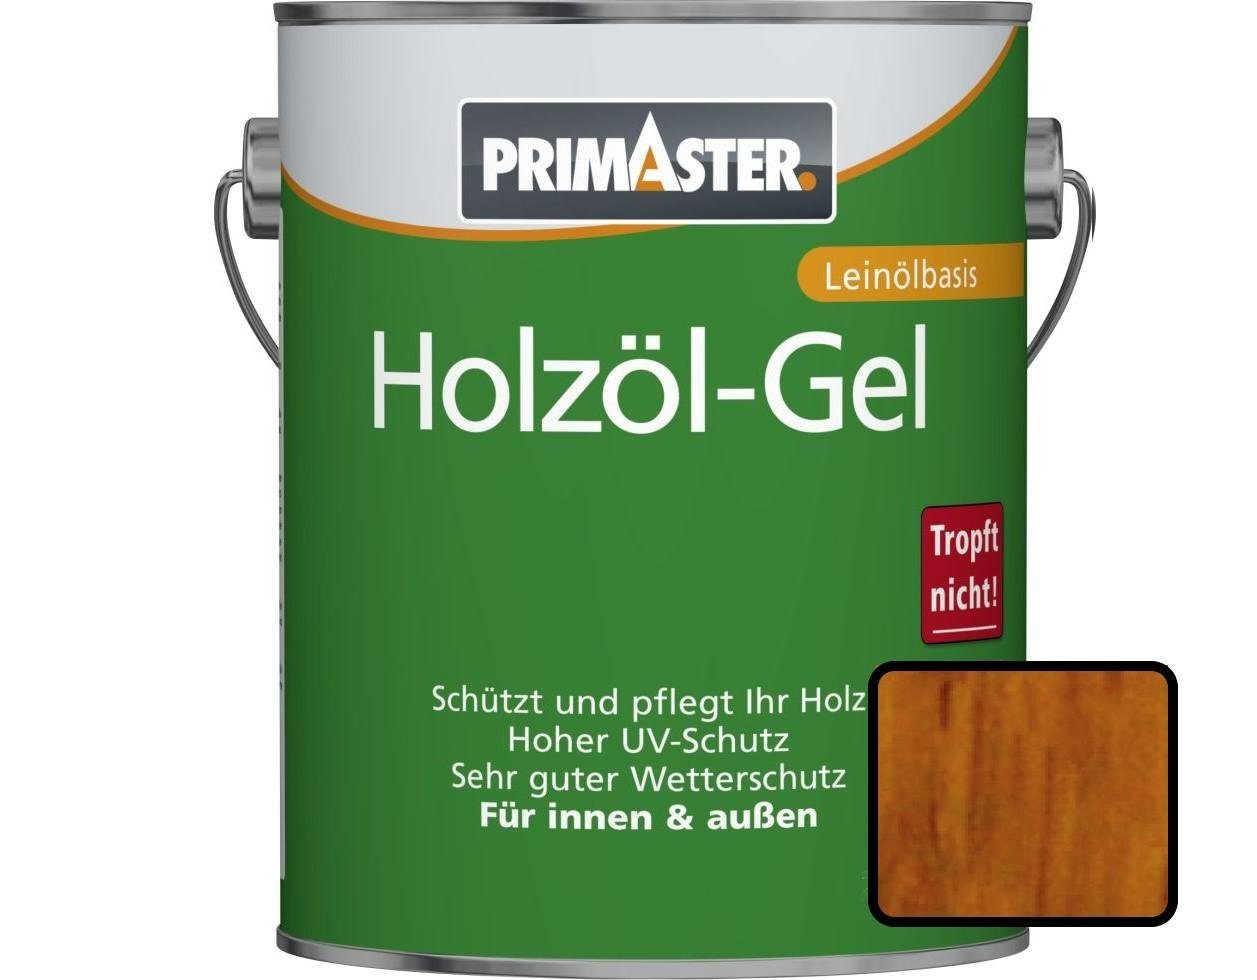 Hartholzöl Holzöl-Gel Primaster eiche Primaster 2,5 L